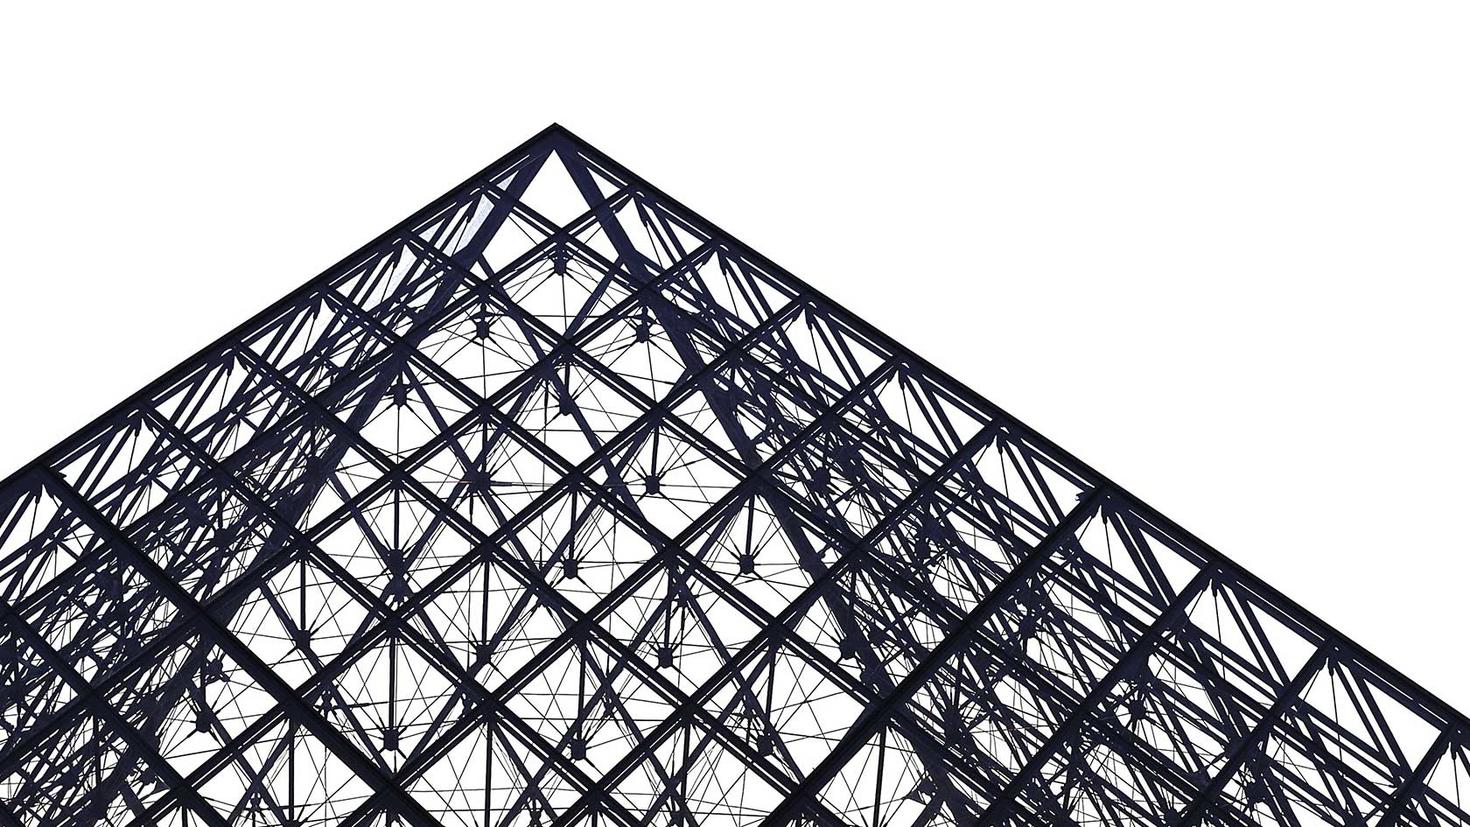 Grande structure métallique de forme triangulaire